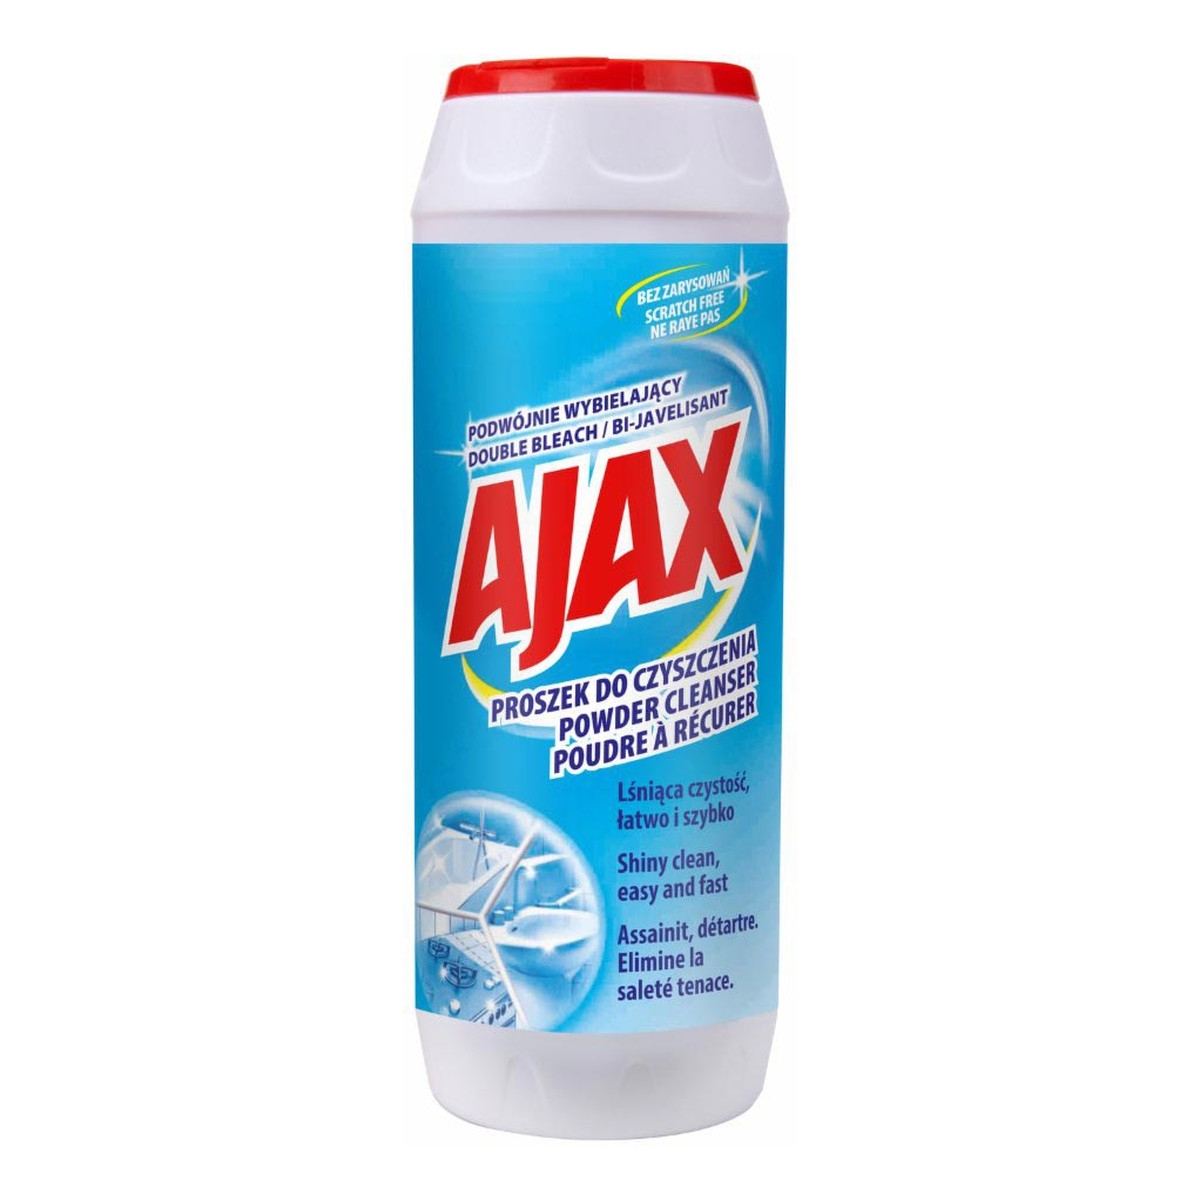 Ajax Podwójnie wybielający Proszek do czyszczenia 450g